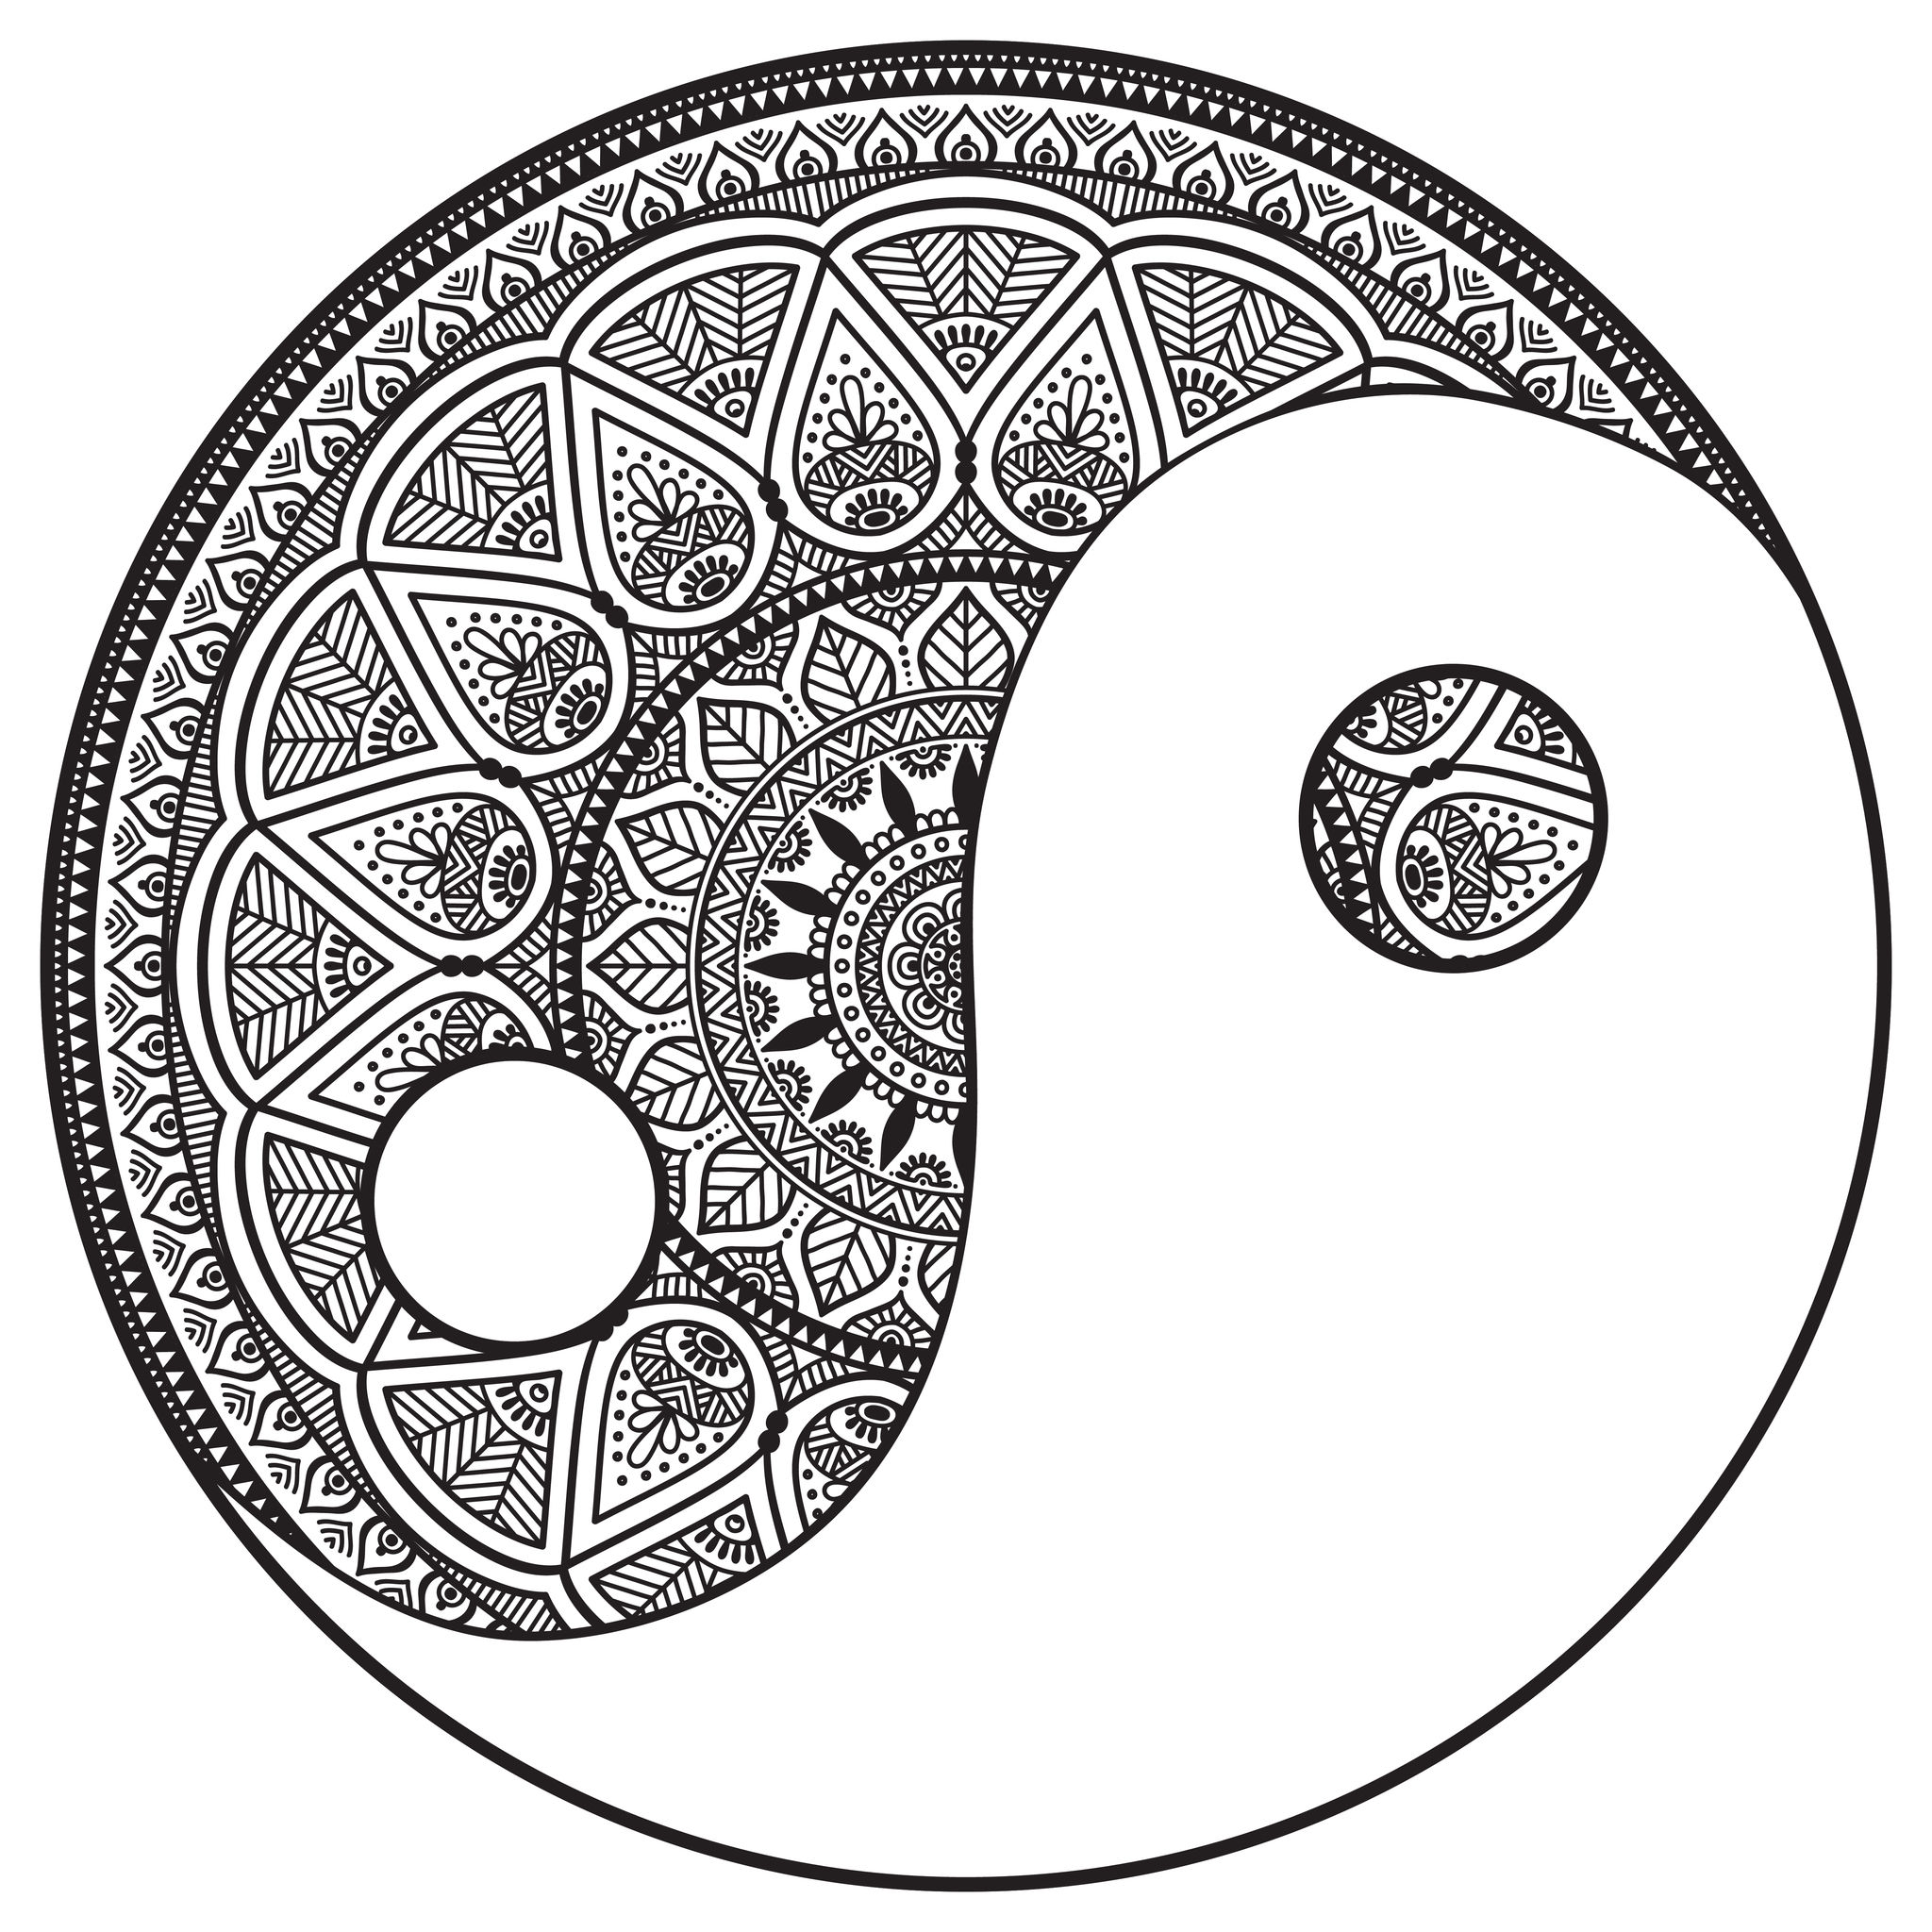 Scegliete la tecnica che preferite per colorare questo esclusivo Mandala che rappresenta il simbolo dello Yin e dello Yang! Aggiungete la vostra anima a questo bellissimo Mandala... potete lasciare l'area bianca vuota o colorarla, a voi la scelta.